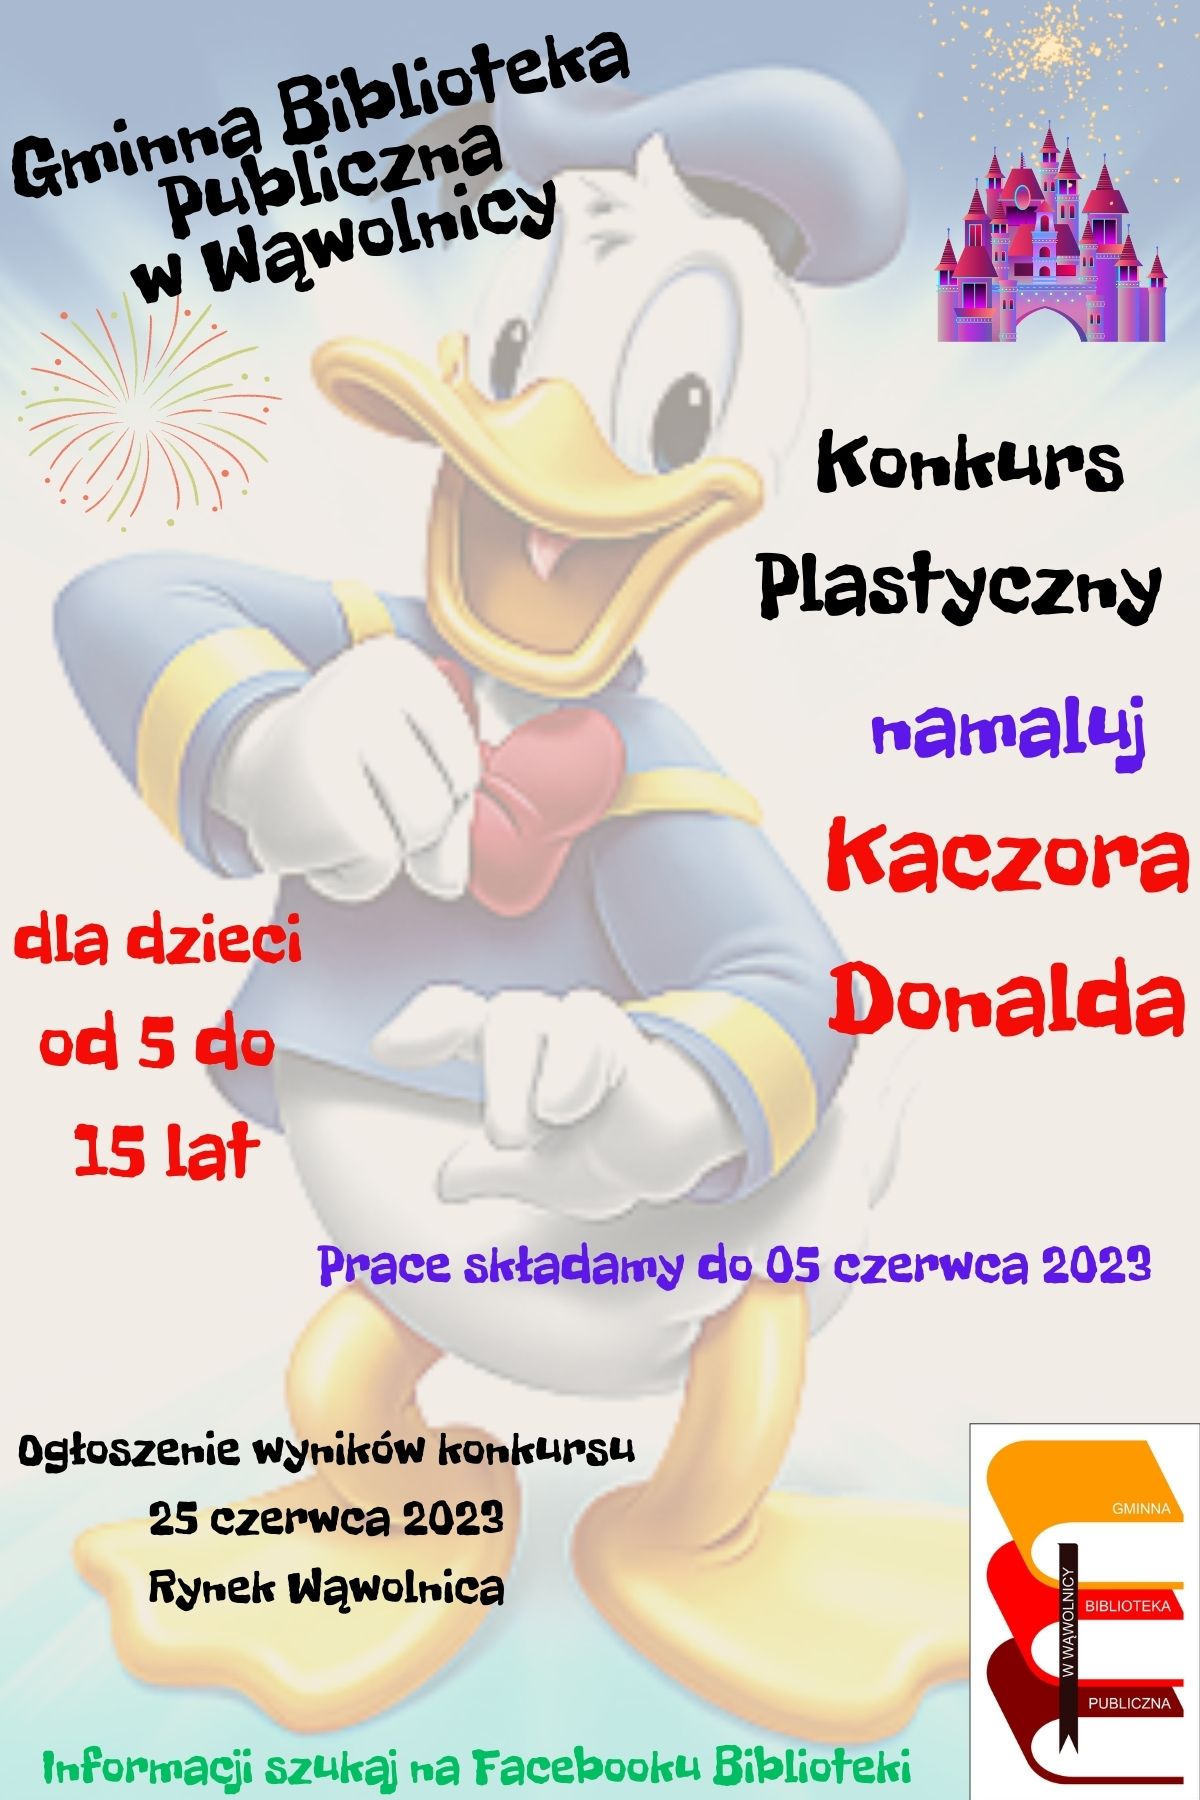 Zdjęcie przedstawia plakat promujący konkurs plastyczny ogłoszony przez Gminną Bibliotekę Publiczną w Wąwolnicy z okazji Dnia Kaczora Donalda.